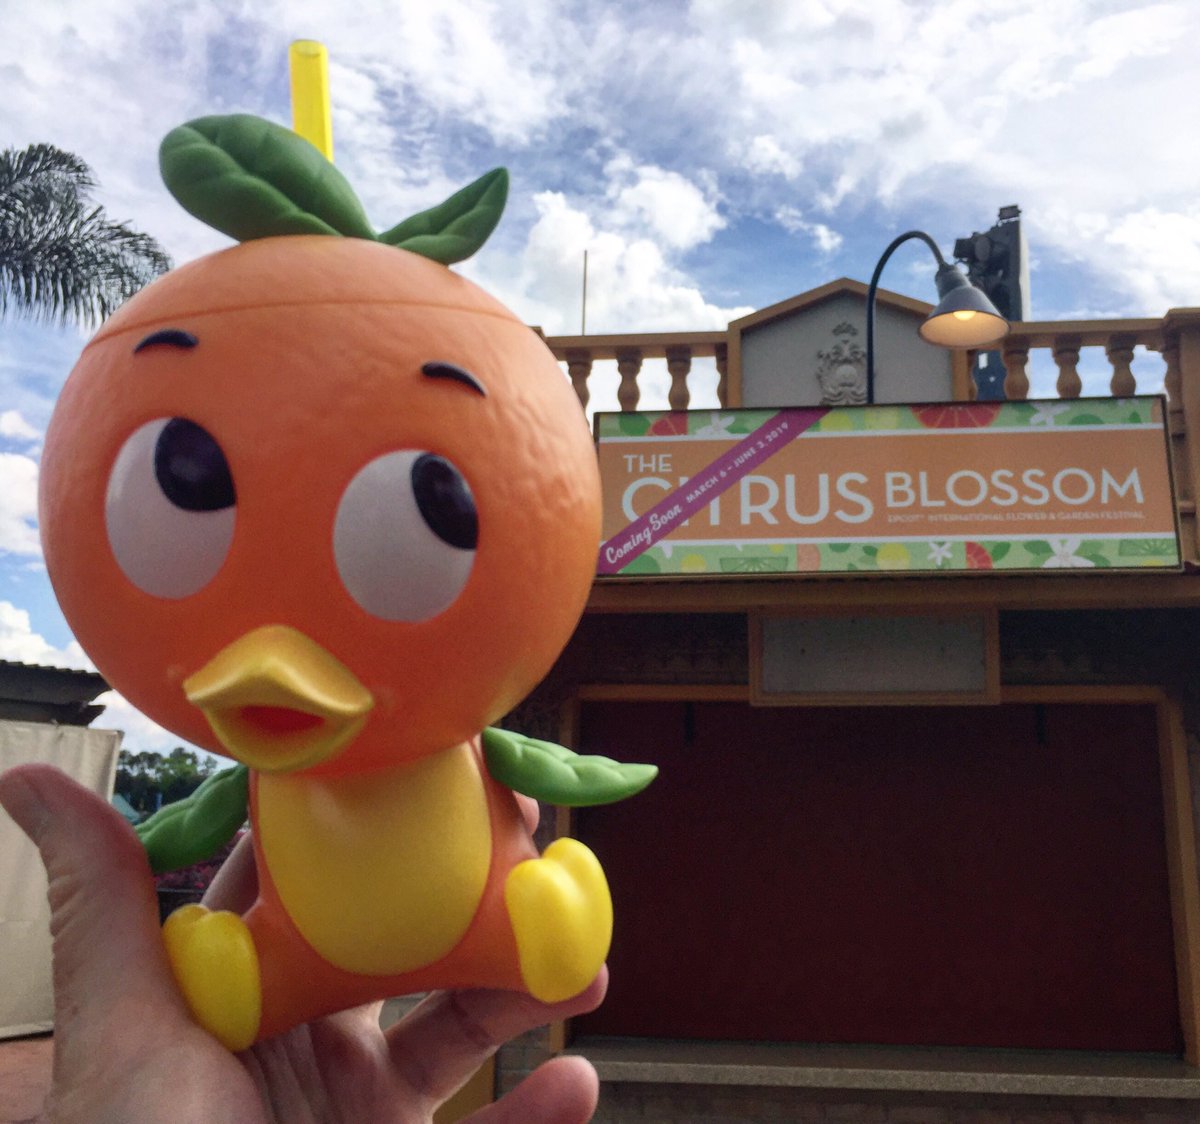 denise at mousesteps on twitter: "i love the new orange bird sipper